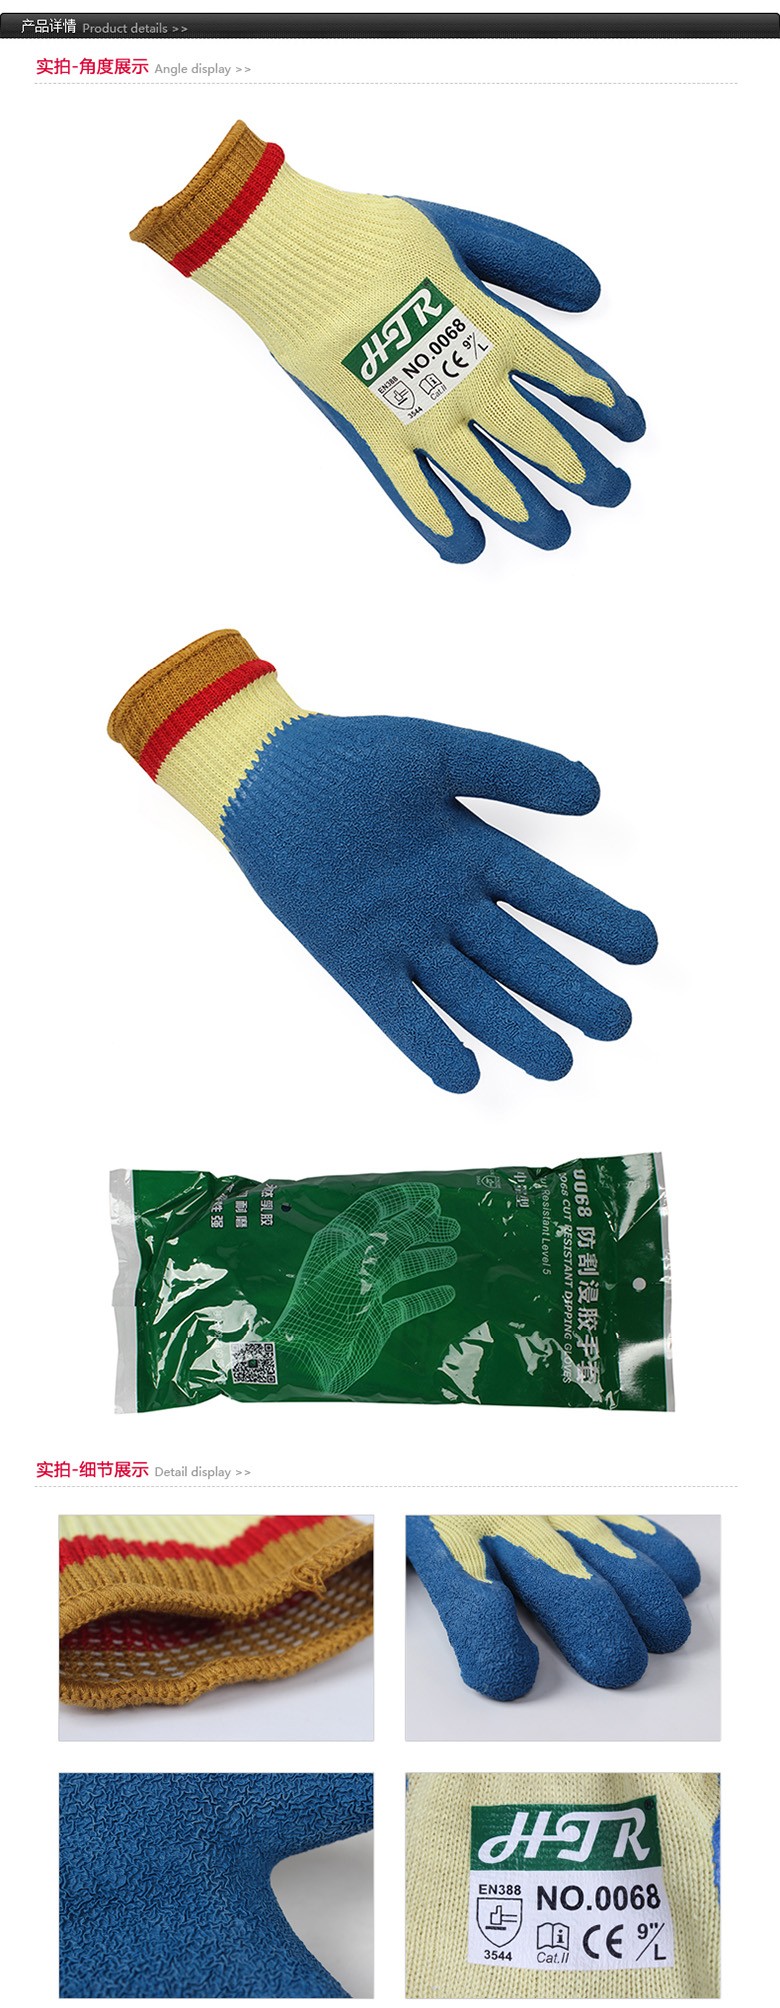 海太尔0068天然乳胶涂掌防割手套图片